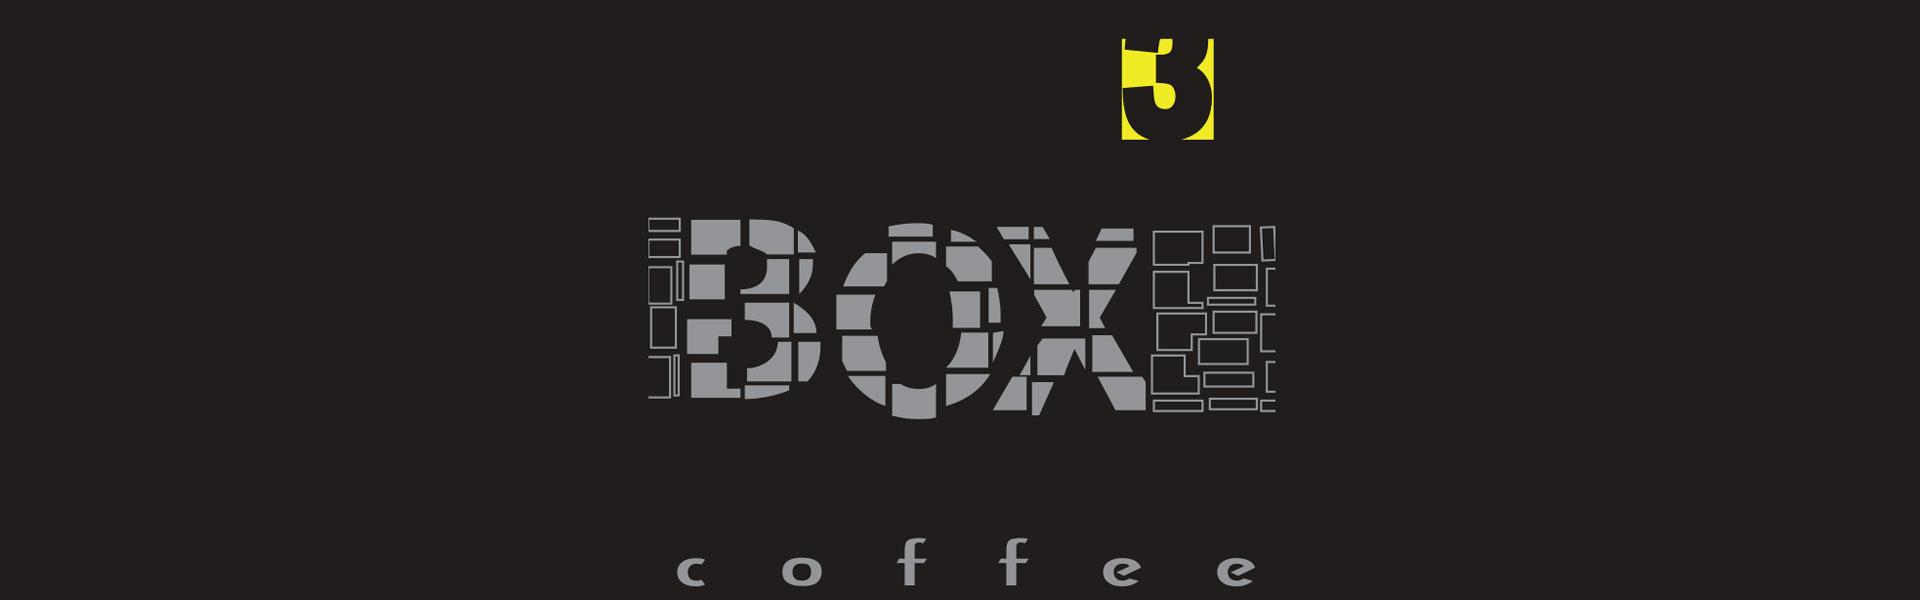 coffee box3 loutraki